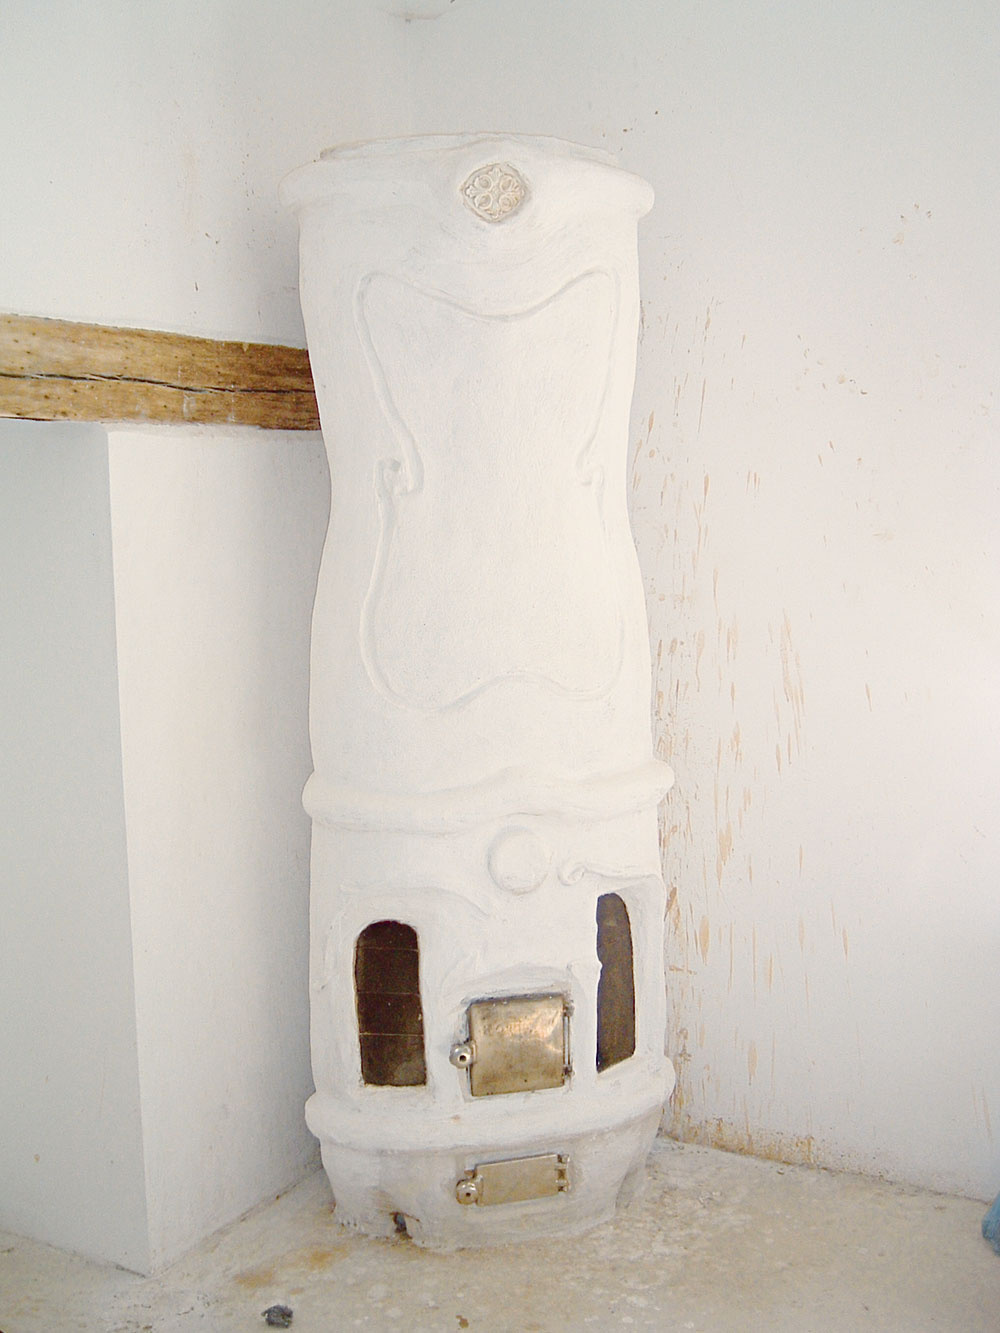 Omietaná pseudobaroková pec bola realizovaná na workshope v Brne v roku 2006. Ako základ sa použil princíp pece s tromi zvislými a jedným vodorovným ťahom. Tento typ bol rozšírený v strednej Európe. Používal sa najmä v mestských bytoch a meštianskych domoch. Nazývame ju aj izbová pec. Proporčne je na malom základe vysoké teleso. Ohnisko je zásobované vzduchom kanálikmi okolo skiel (1) a prídavným vzduchom vo dvoch rovinách (2 a 3). Prívod vzduchu roštom (4) je minimálny. Z ohniska spaliny odchádzajú vodorovným ťahom (5) do čelného zvislého ťahu (6). Potom klesajú – padajú stredom pece (7), obracajú sa a idú do komína stúpajúcim ťahom (8). Pec má aj dymovú medzierku. Stredom pece vedie plechová rúra (10) obalená v pletive a zaliata hlinou. V nej sa ohrieval vzduch nasávaný v spodnej (11) a vyfukovaný v hornej (12) časti pece. Hlinený zálev pôsobil teploakumulačne a chránil rúru pred prehorením. Hlinená omietka bola uchytená na kovovom pletive, mala niekoľko vrstiev, posledná vrstva bola